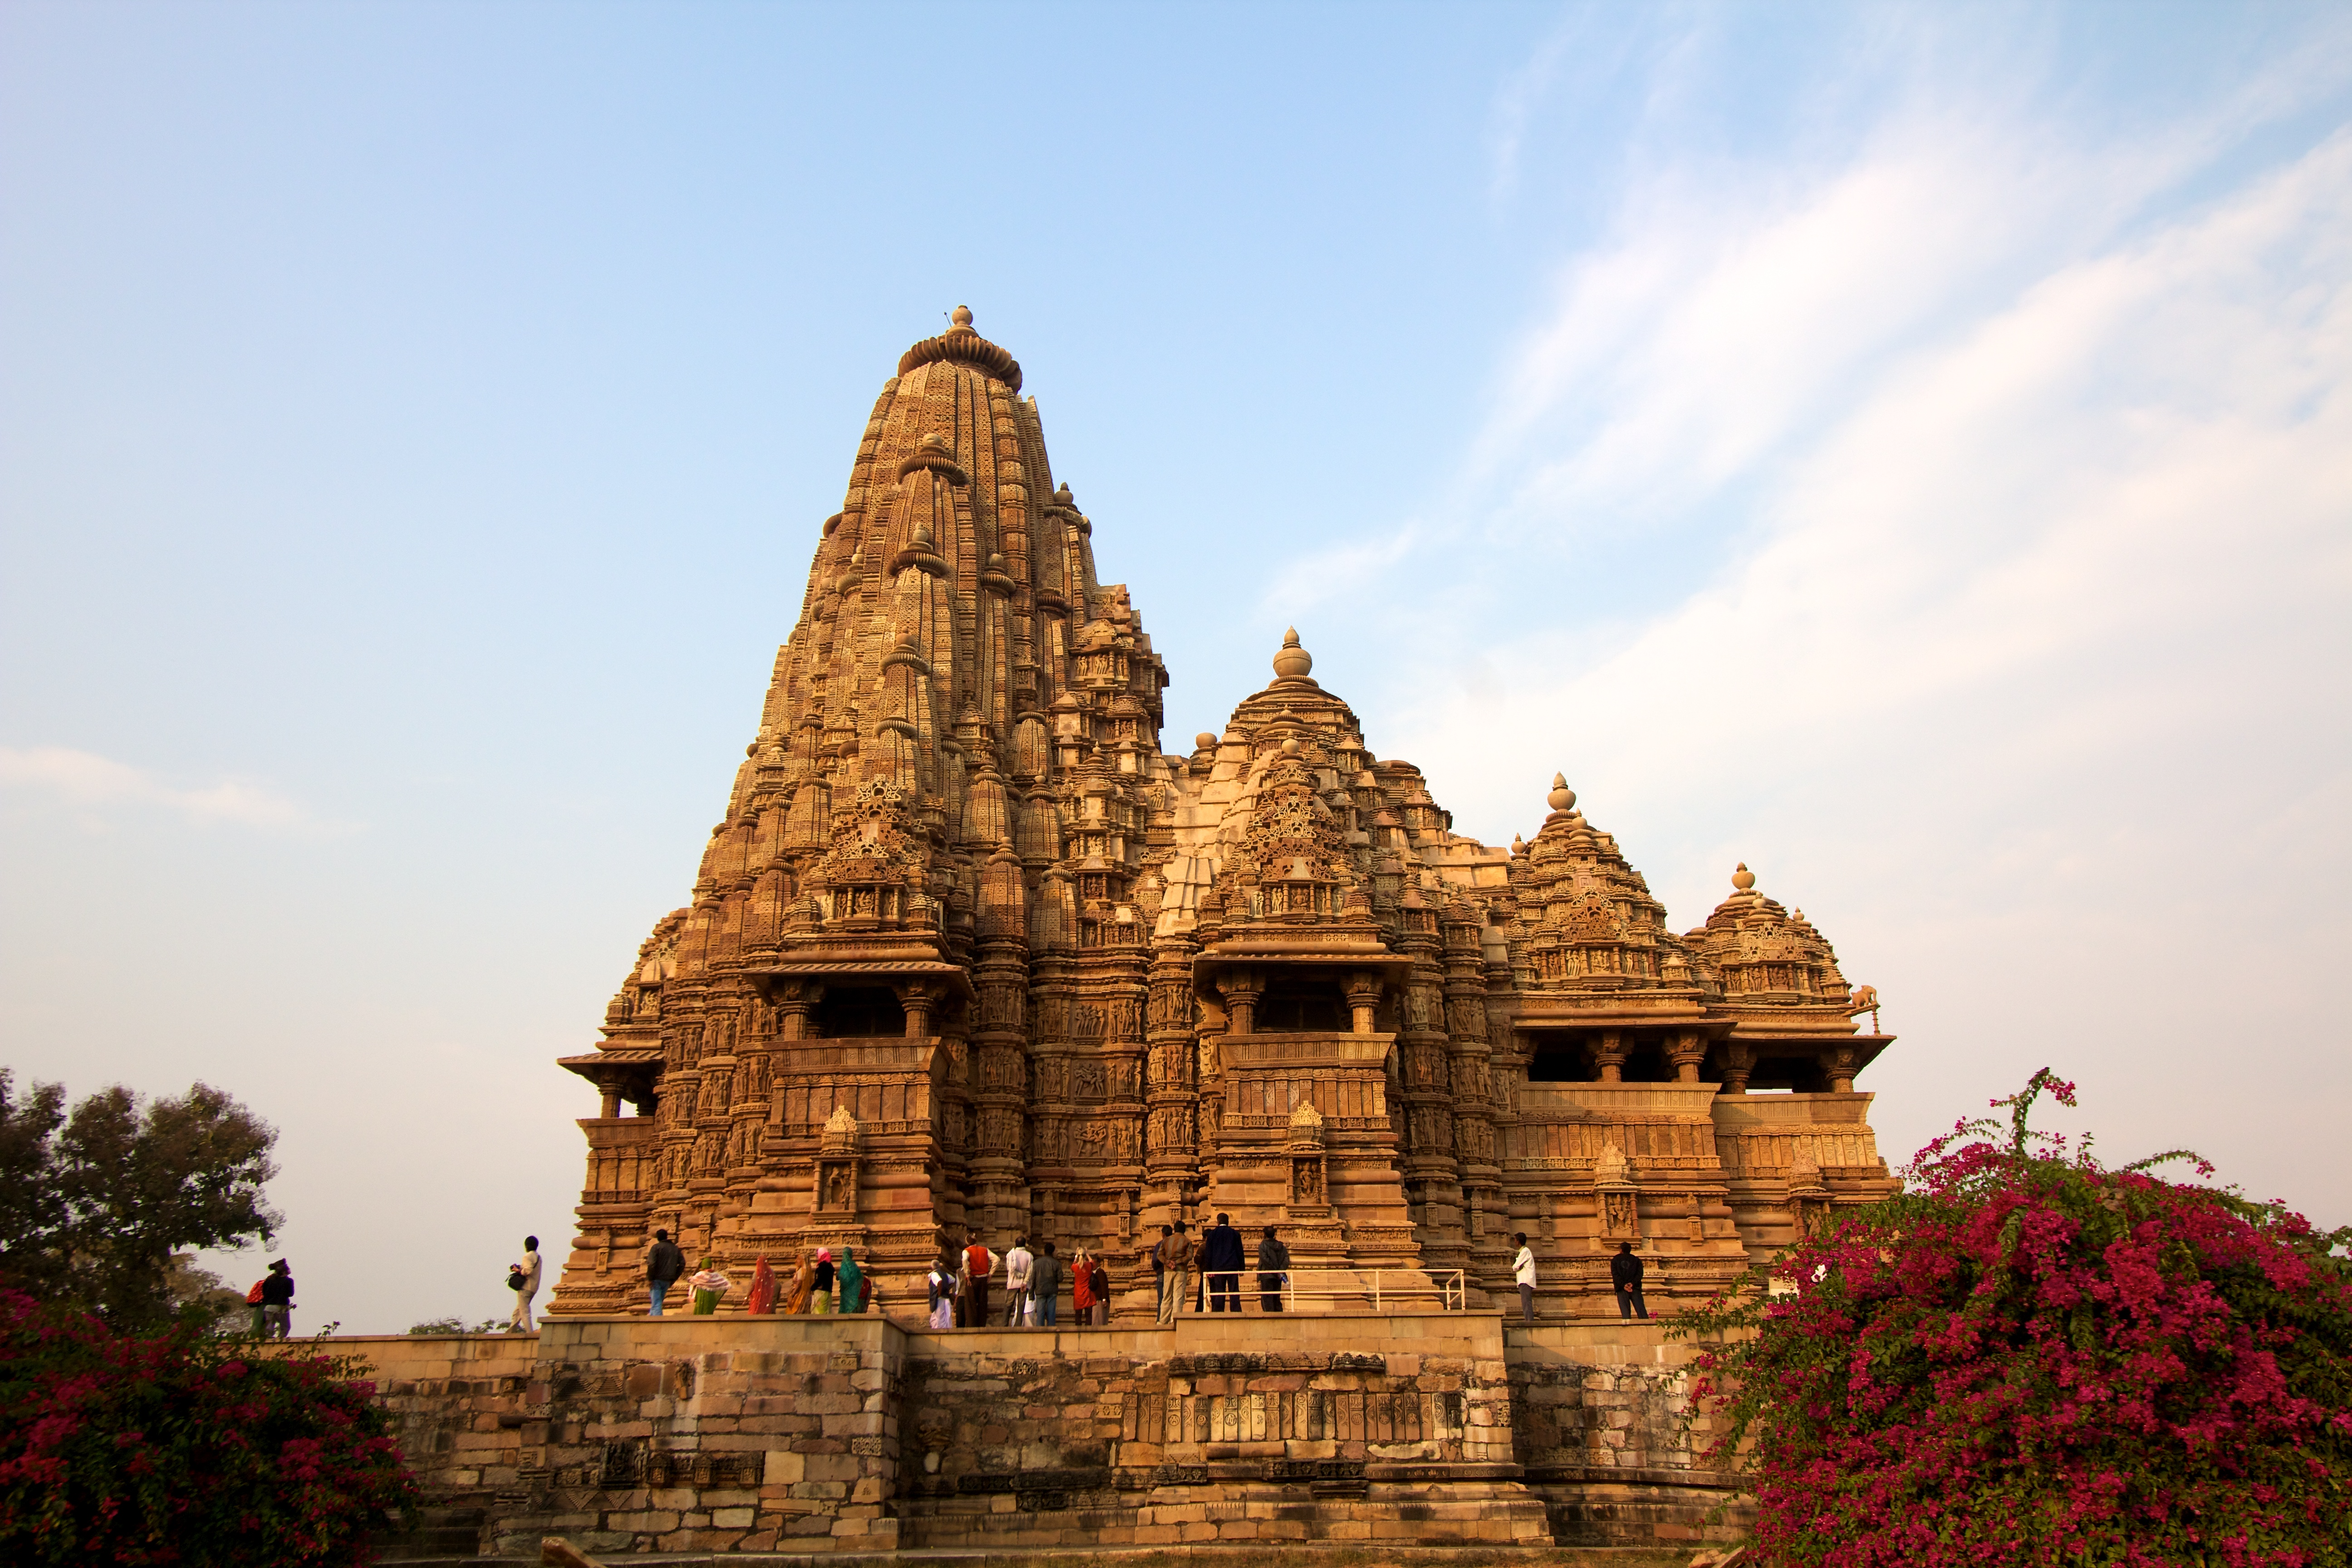 Kandariya Mahadeva Temple, ca. 1030 (Khajuraho, India). Photo by Ramón, CC BY-SA 2.0.